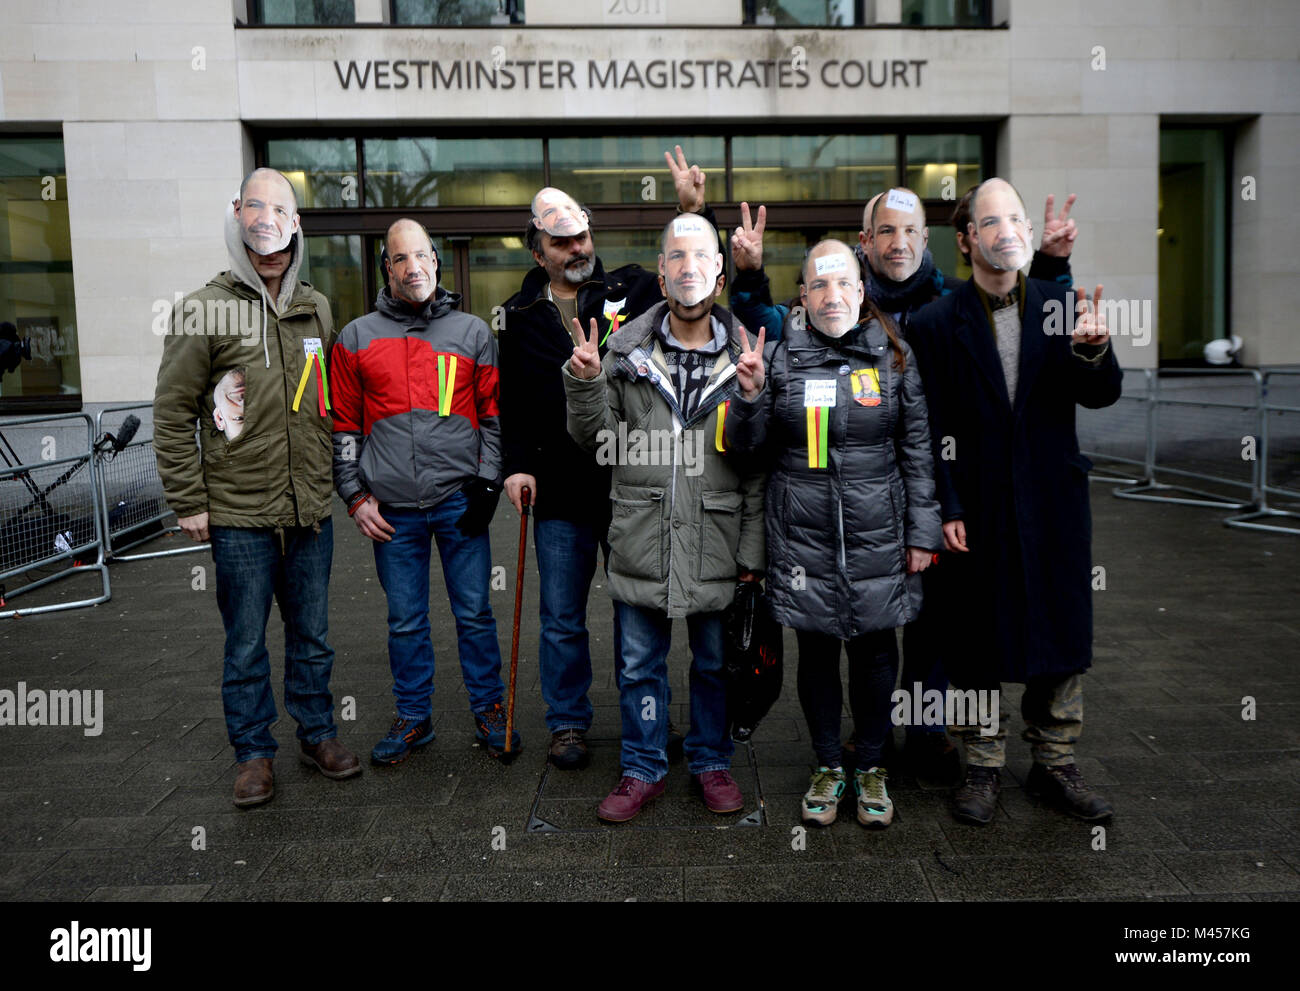 Anhänger von James Matthews, der mit kurdischen Milizen gegen den Islamischen Staat bekämpften, tragen Masken mit seinem Gesicht auf der Außenseite Amtsgericht Westminster, London, wo er mit einem Terror Handlung aufgeladen. Stockfoto